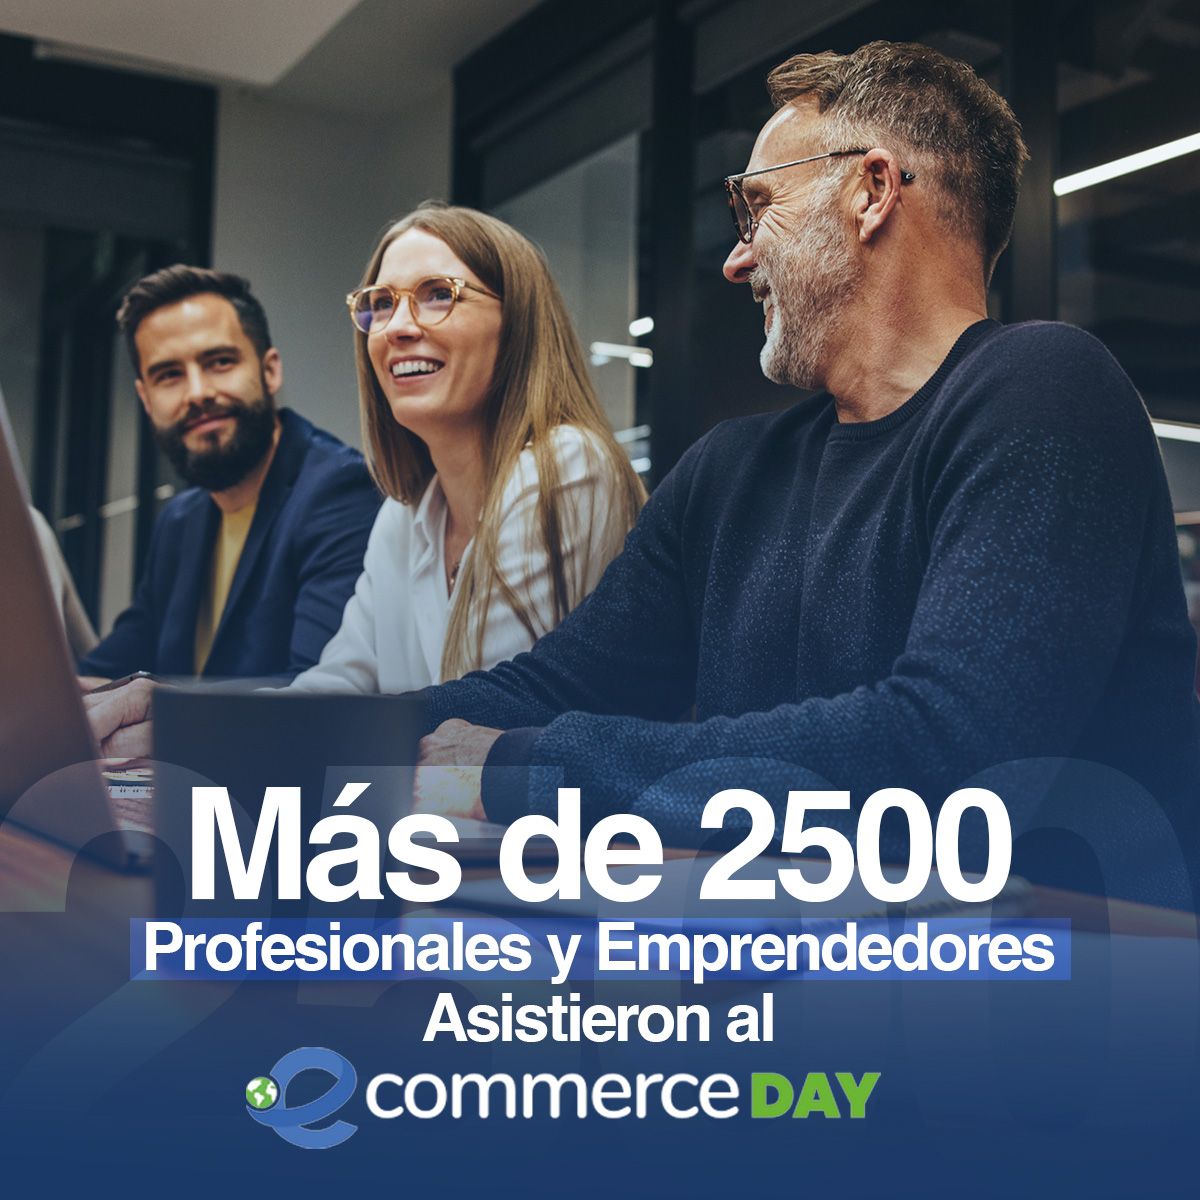 Más de 2500 Profesionales y Emprendedores Asistieron al eCommerce Day